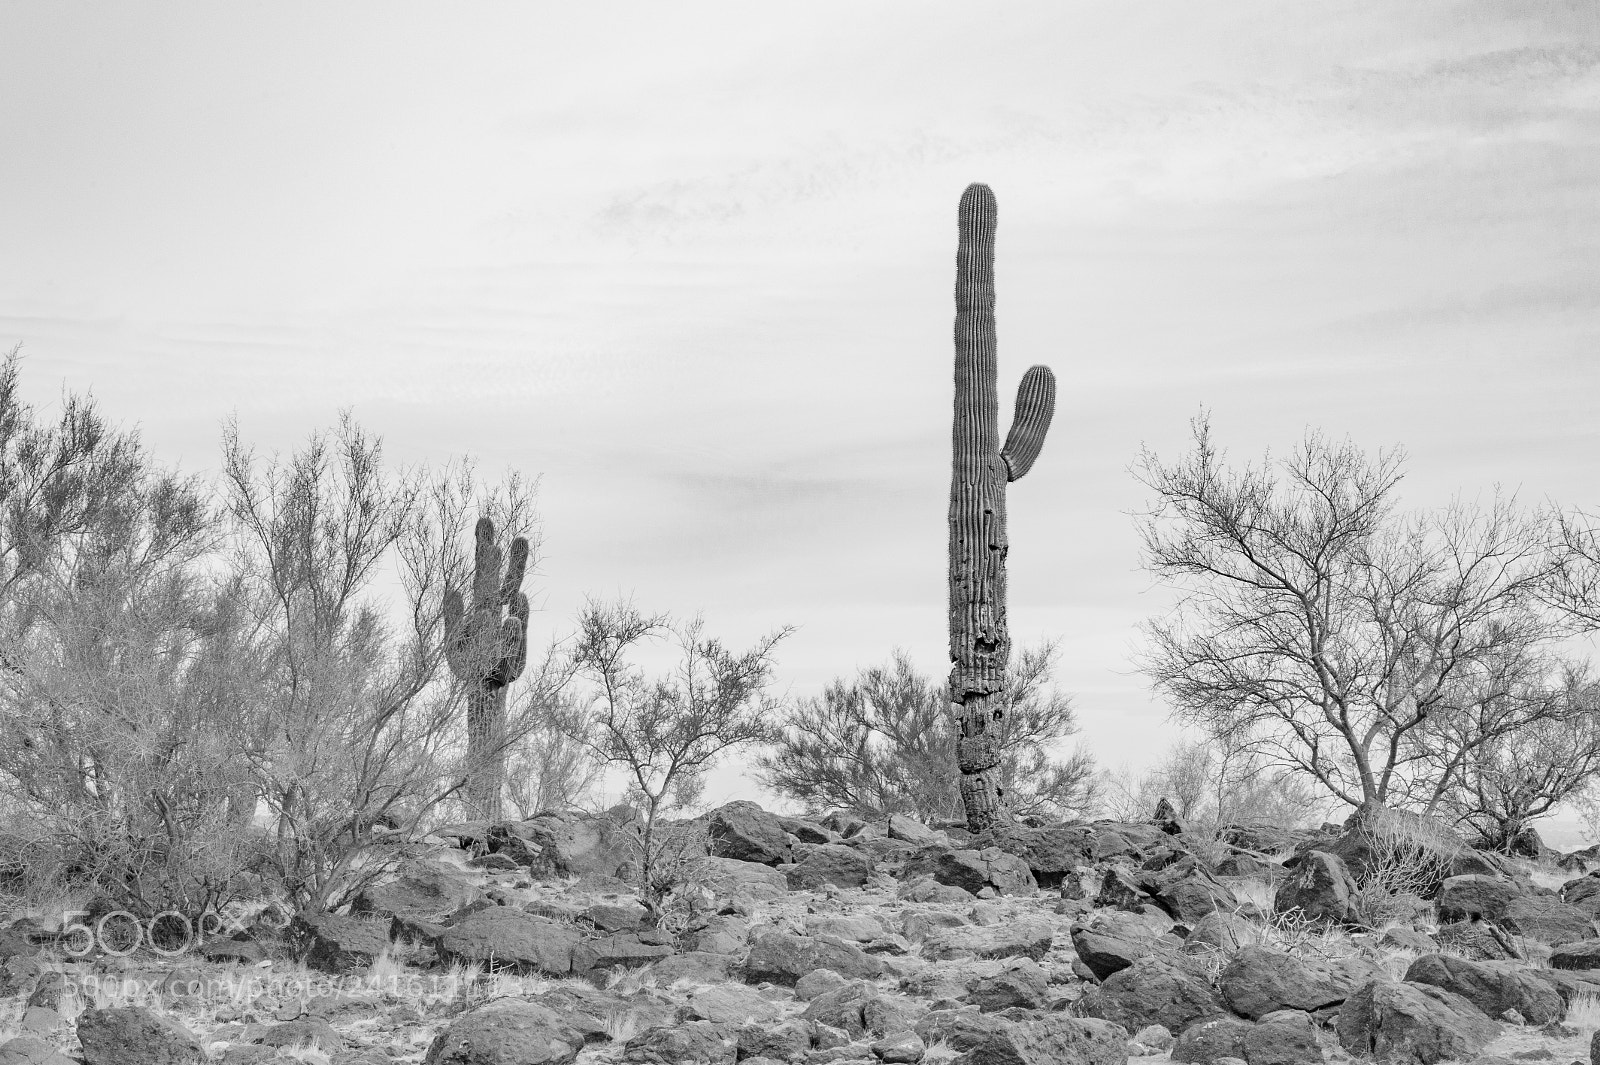 Nikon D700 sample photo. Saguaro photography